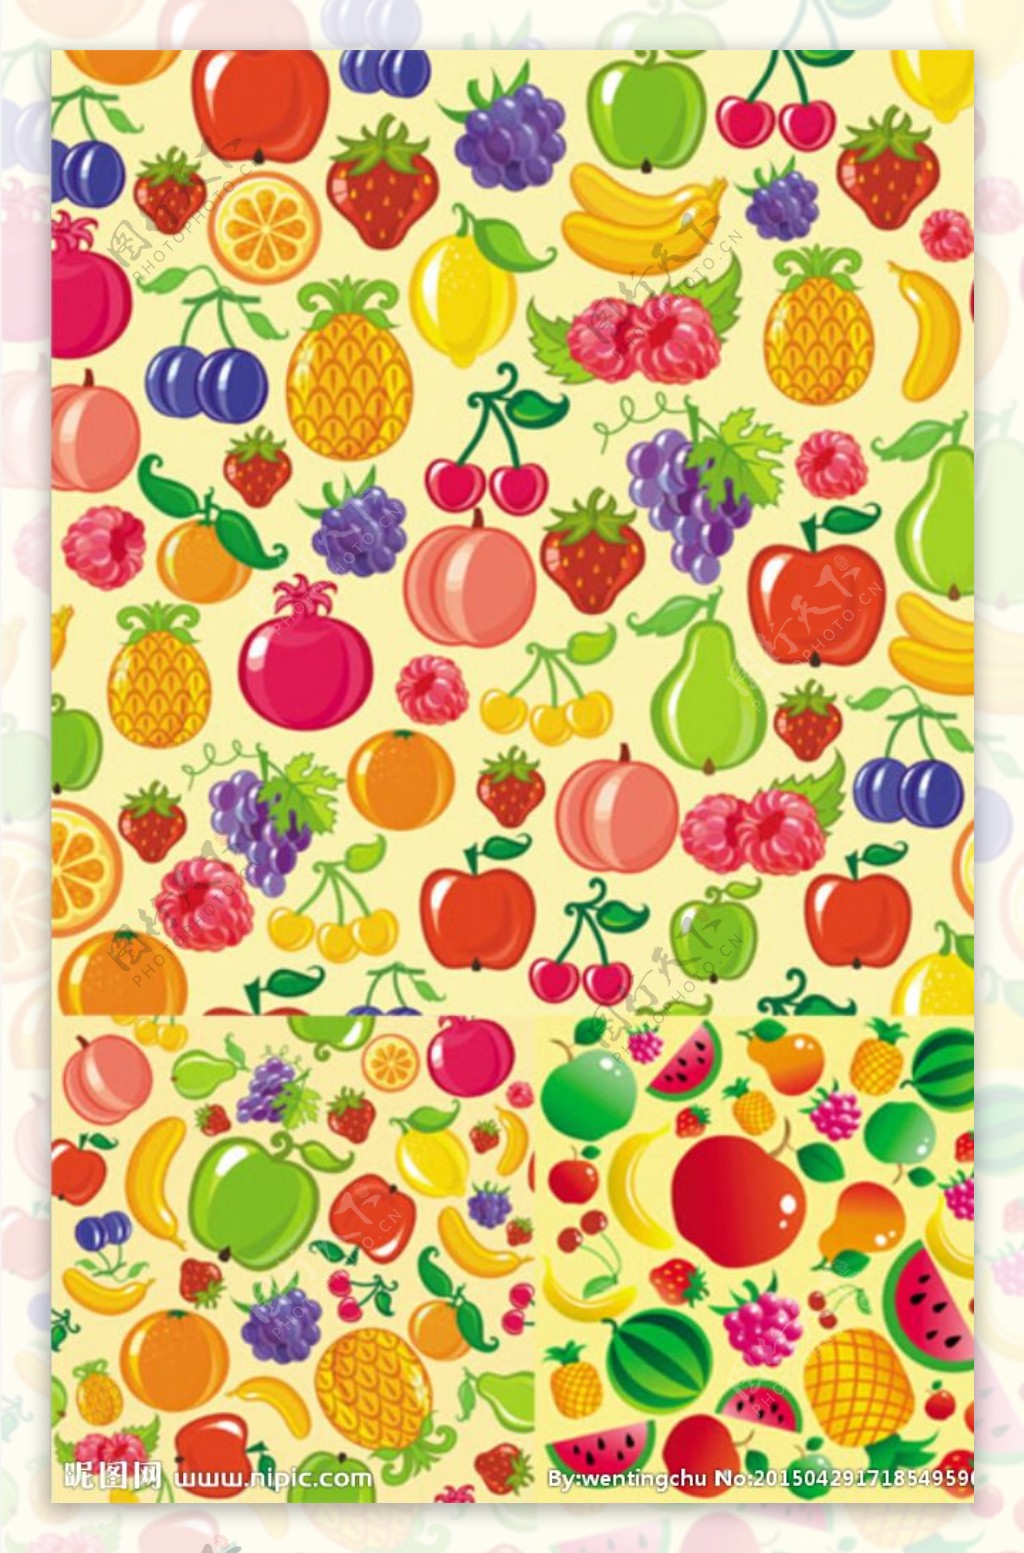 可爱鲜艳水果插图矢量素材图片